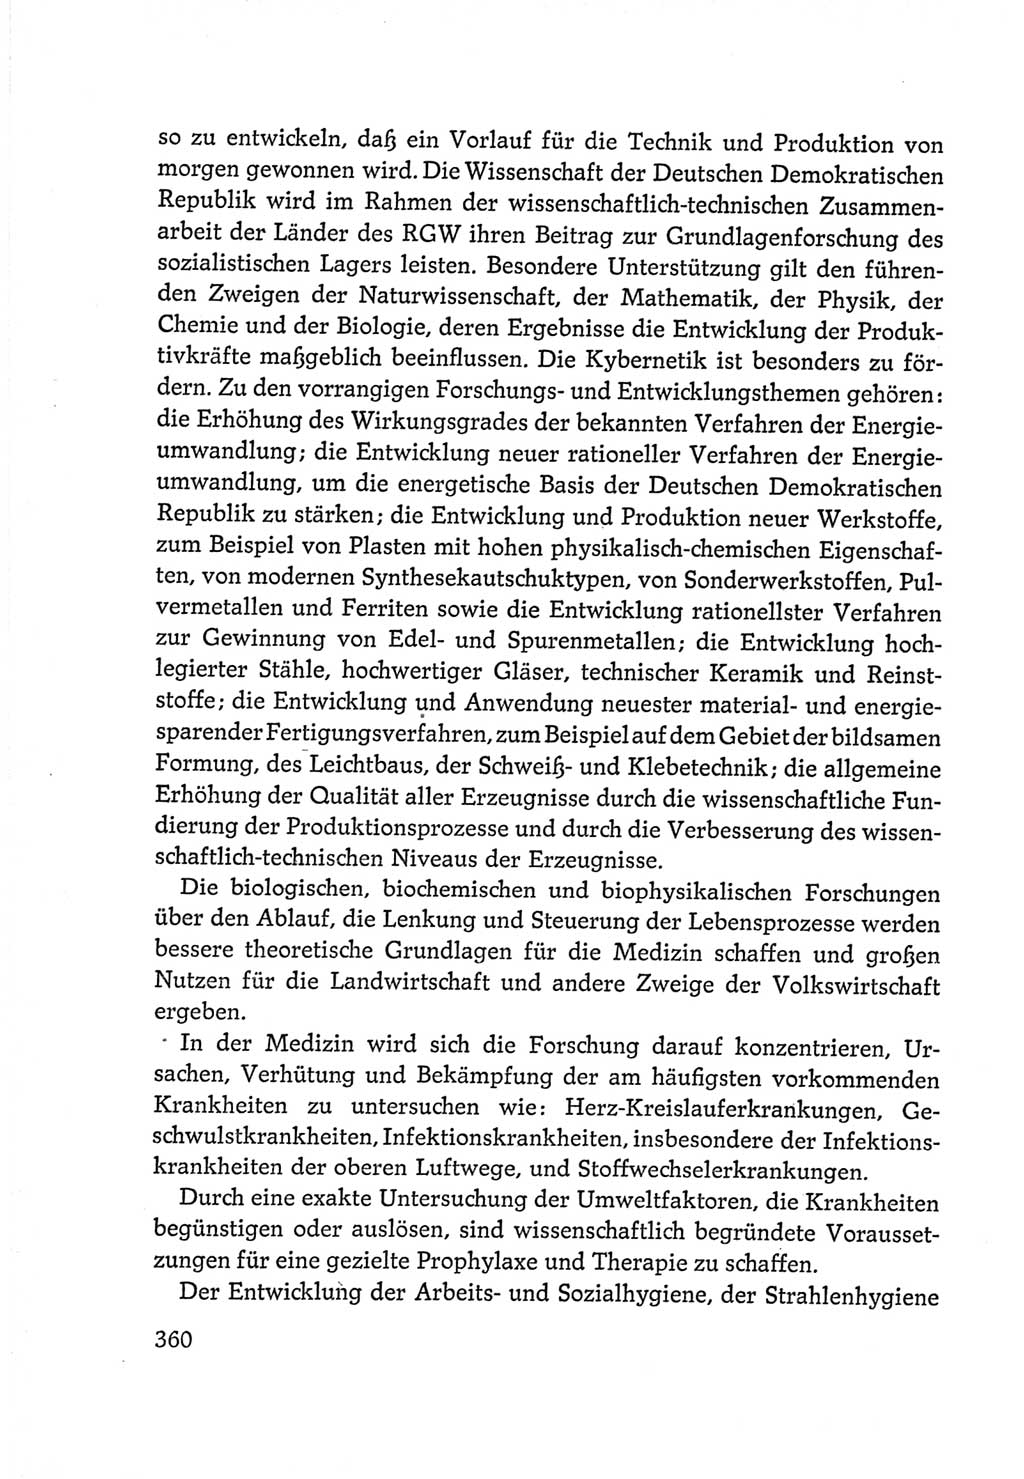 Protokoll der Verhandlungen des Ⅵ. Parteitages der Sozialistischen Einheitspartei Deutschlands (SED) [Deutsche Demokratische Republik (DDR)] 1963, Band Ⅳ, Seite 360 (Prot. Verh. Ⅵ. PT SED DDR 1963, Bd. Ⅳ, S. 360)